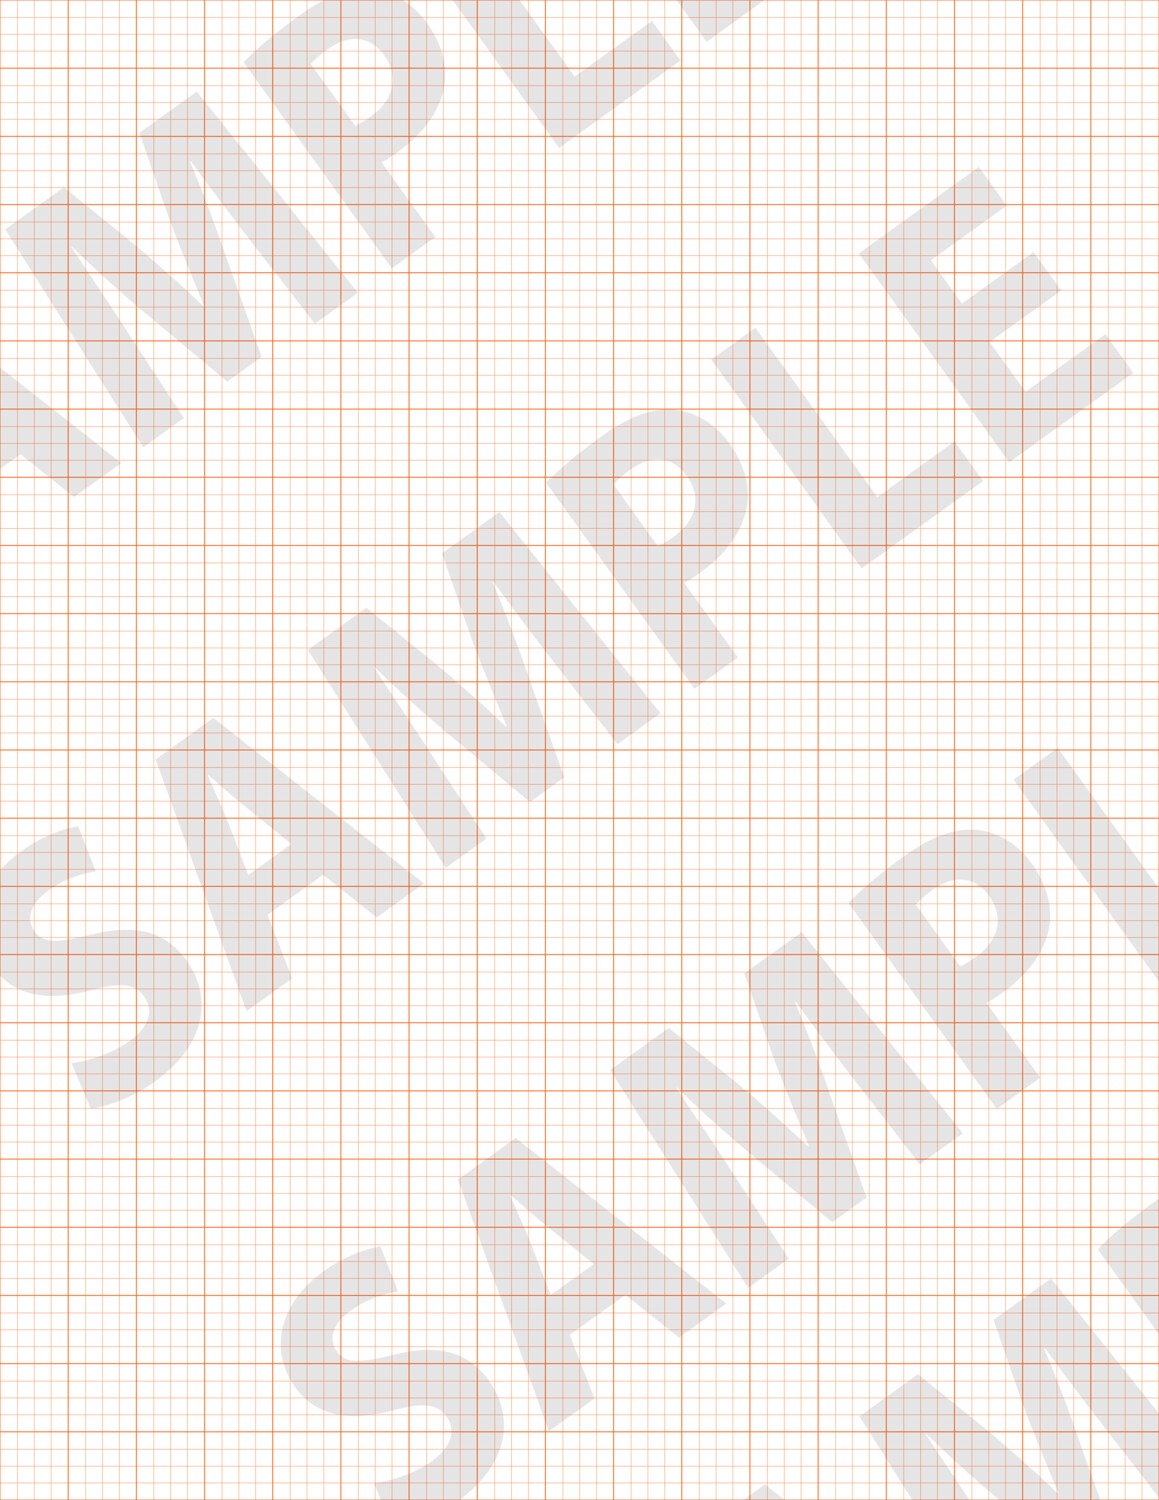 Bright Orange 2 - Medium Grid Paper